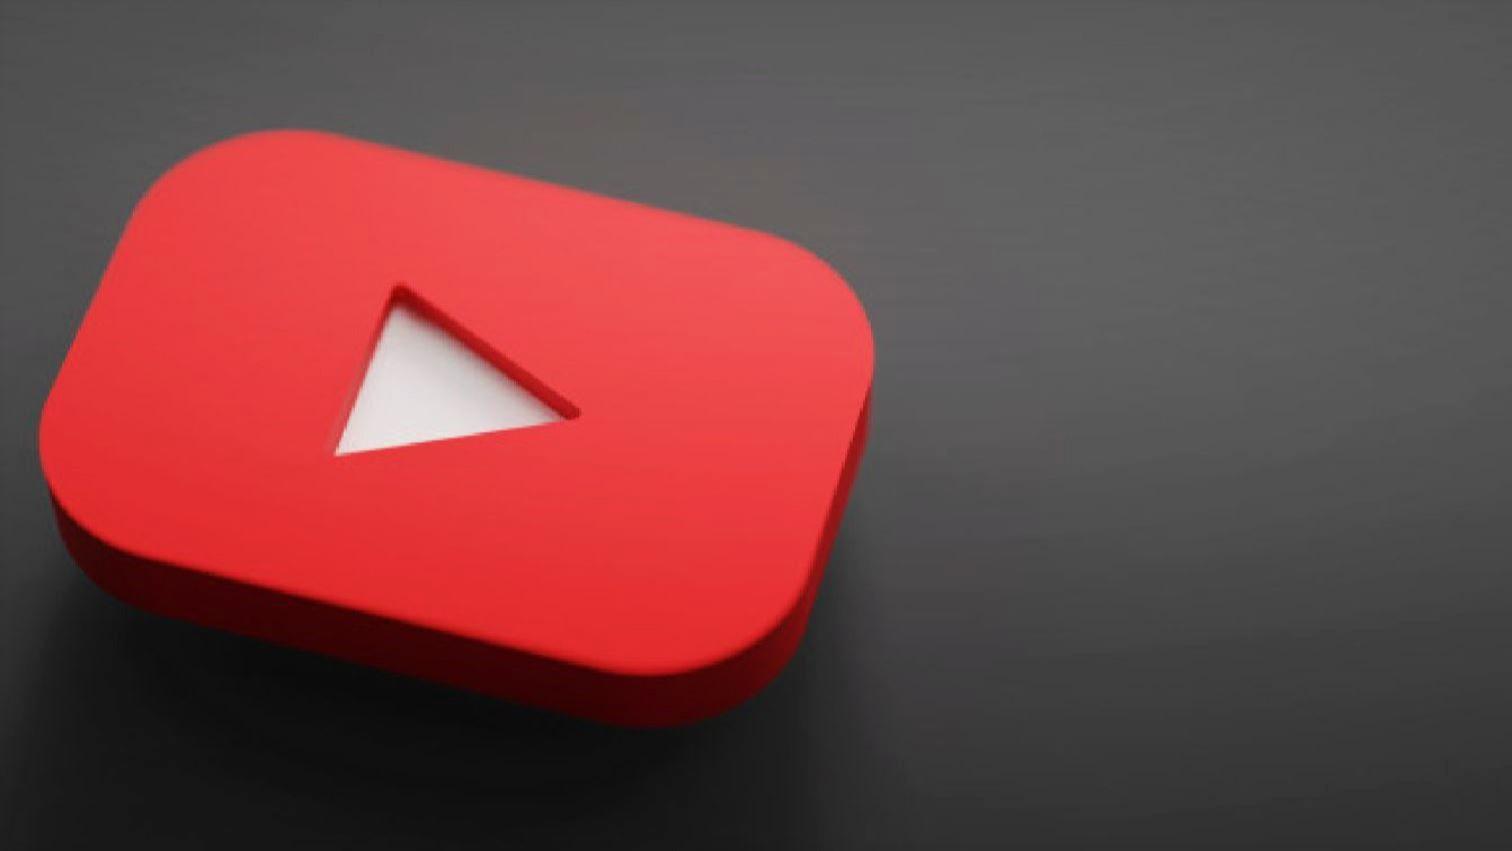 Downdetector: В США пользователи YouTube сообщили о сбое сервиса